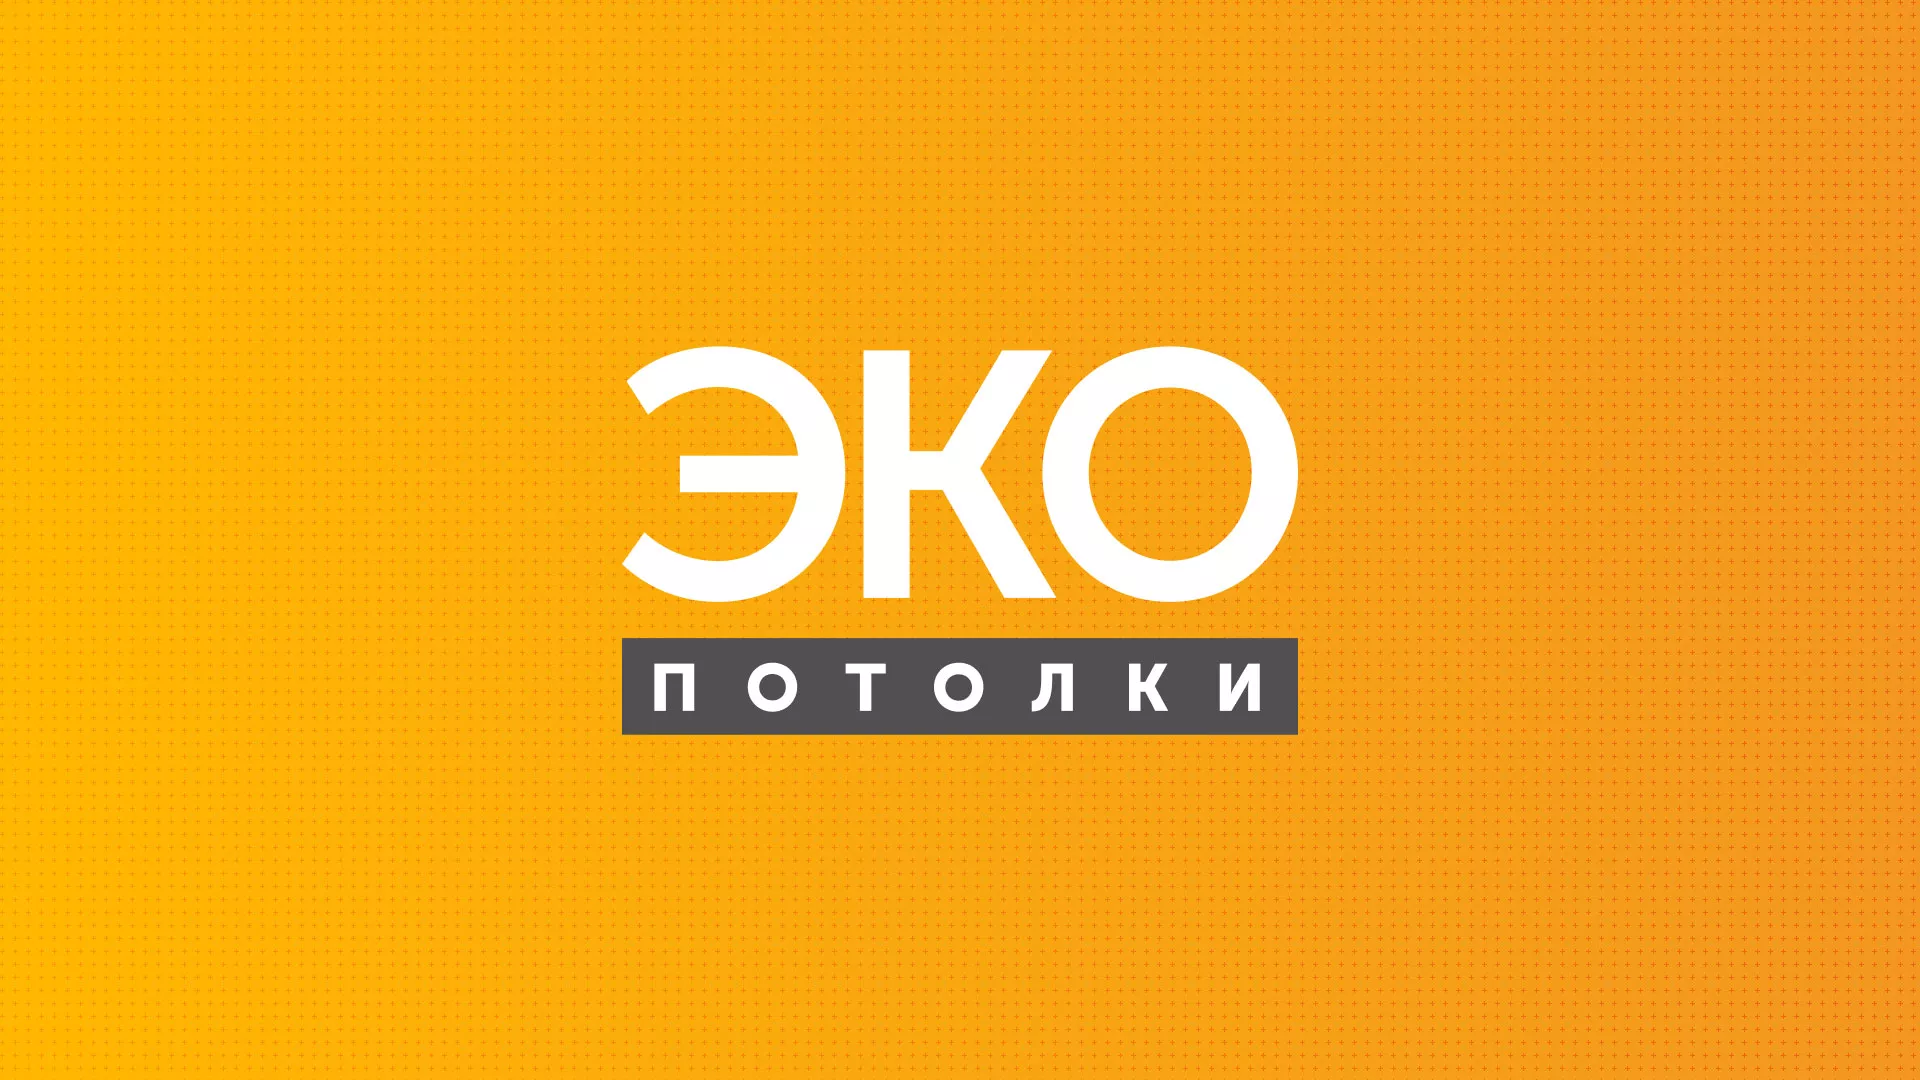 Разработка сайта по натяжным потолкам «Эко Потолки» в Покровске